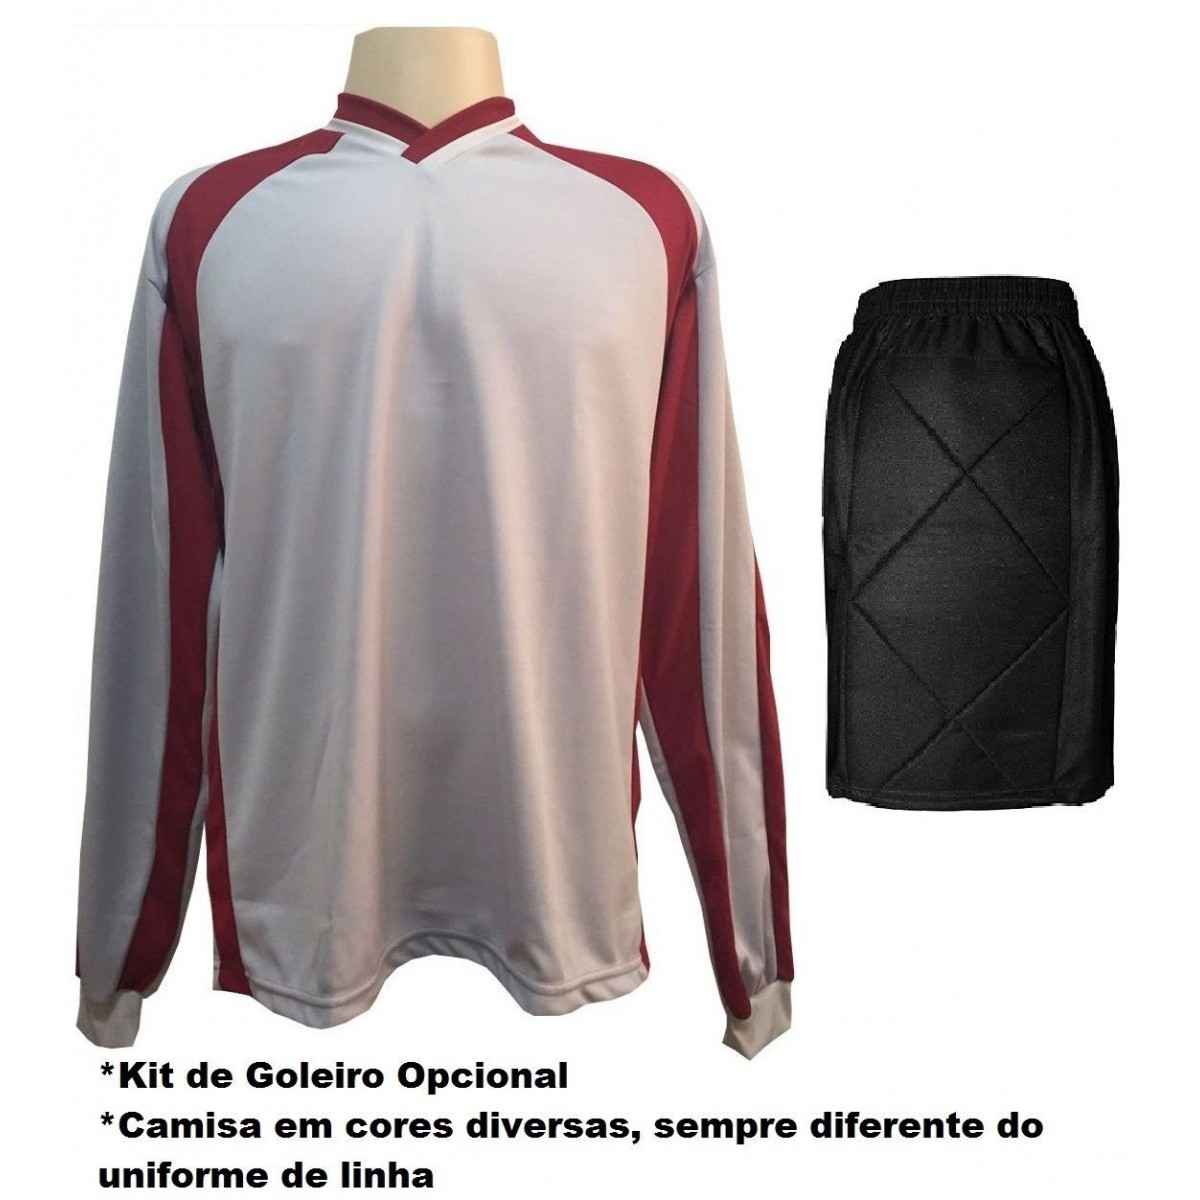 Uniforme Esportivo com 18 camisas modelo City Preto/Branco + 18 calções modelo Copa + 1 Goleiro + Brindes